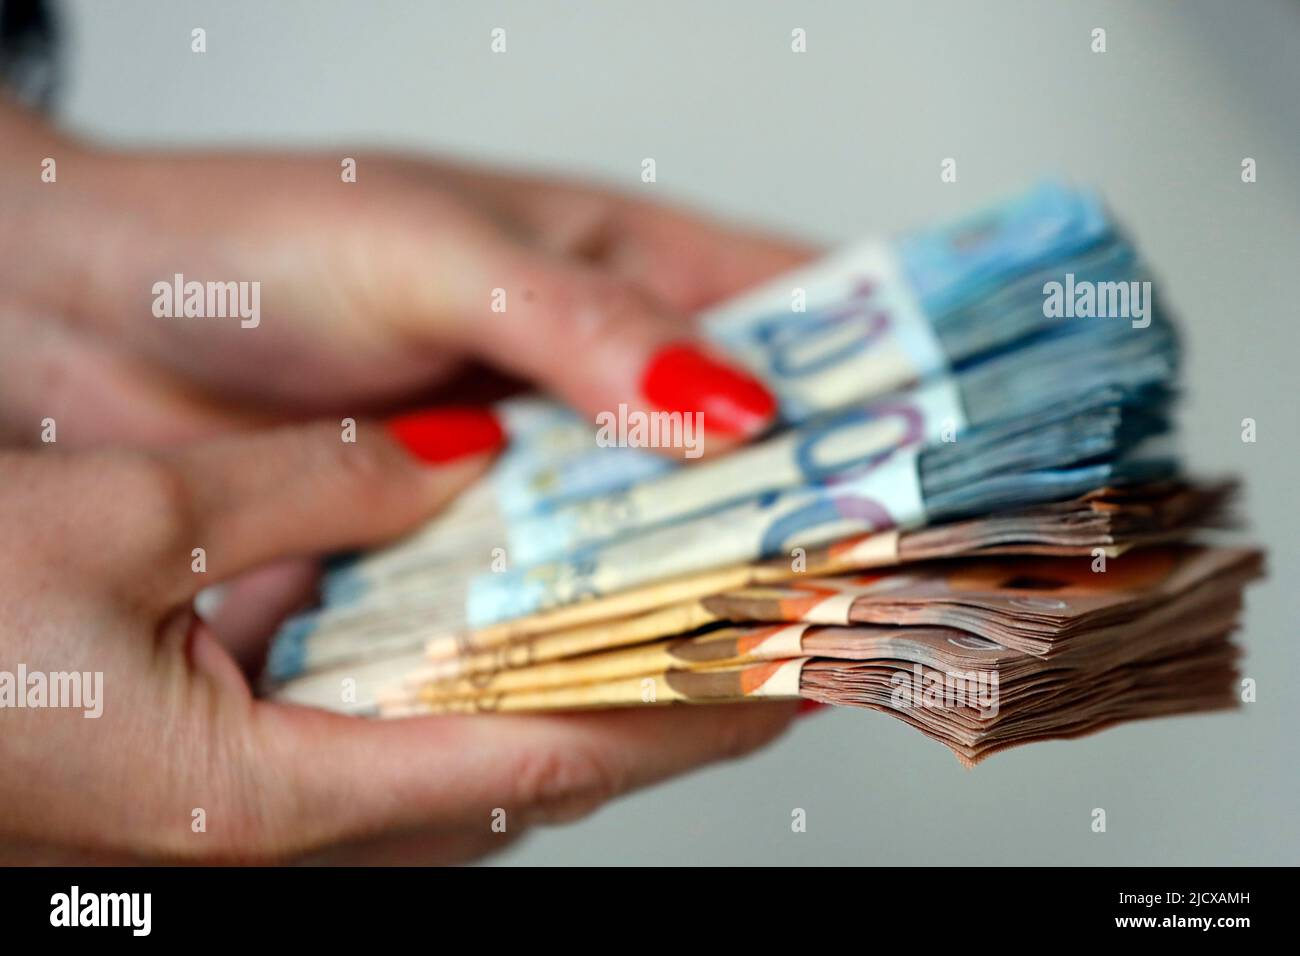 Donna in possesso di banconote in euro, concetto di rubare contanti, ricchi, risparmi o spendere denaro, contando pagamenti, Francia, Europa Foto Stock